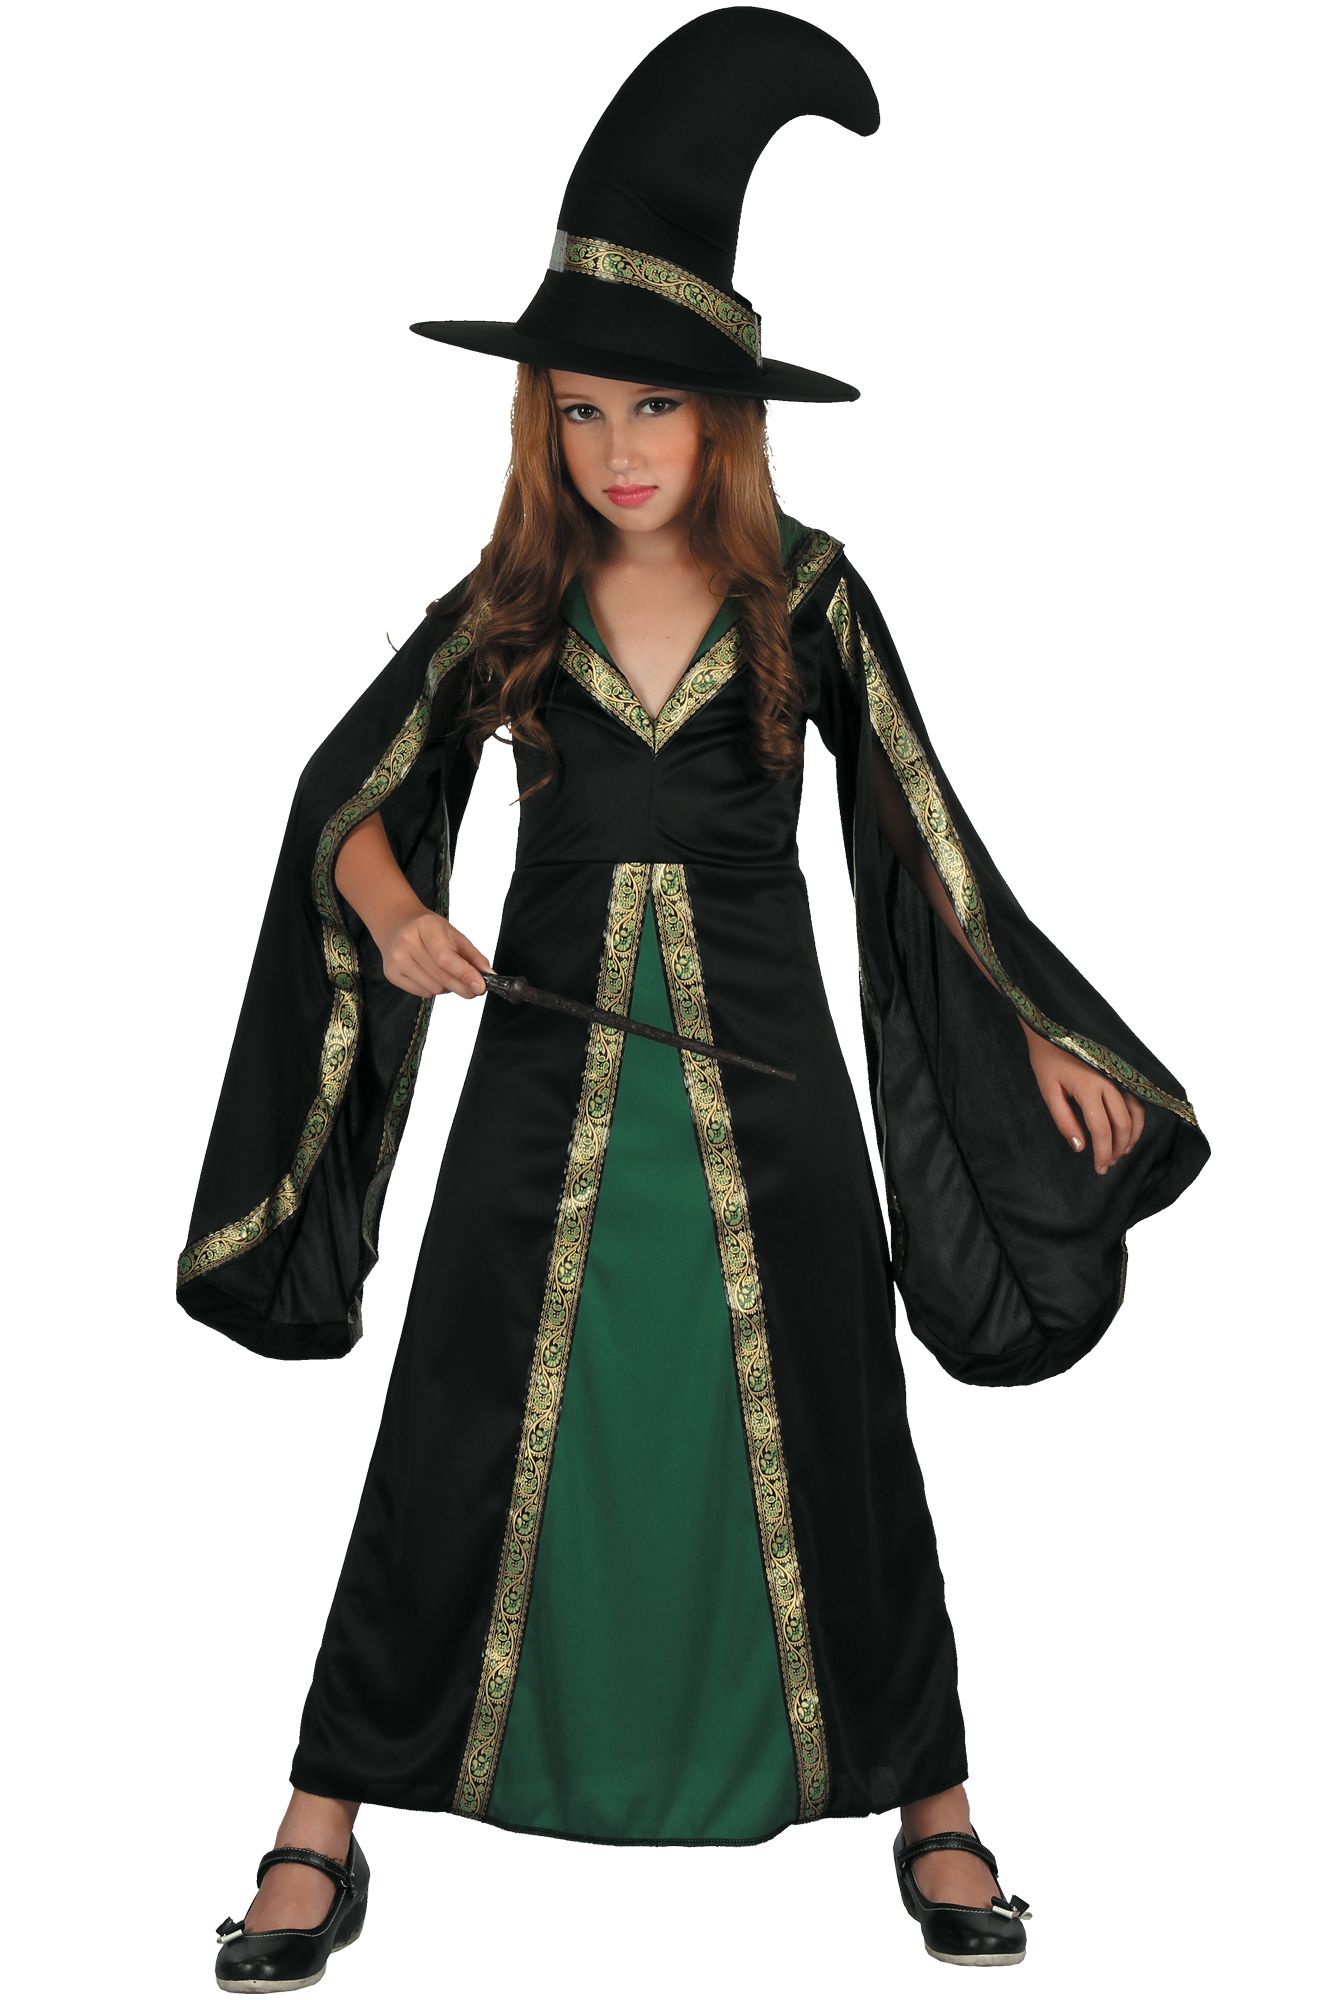 Купить костюм ведьмы на хэллоуин: костюм от 27 производителей